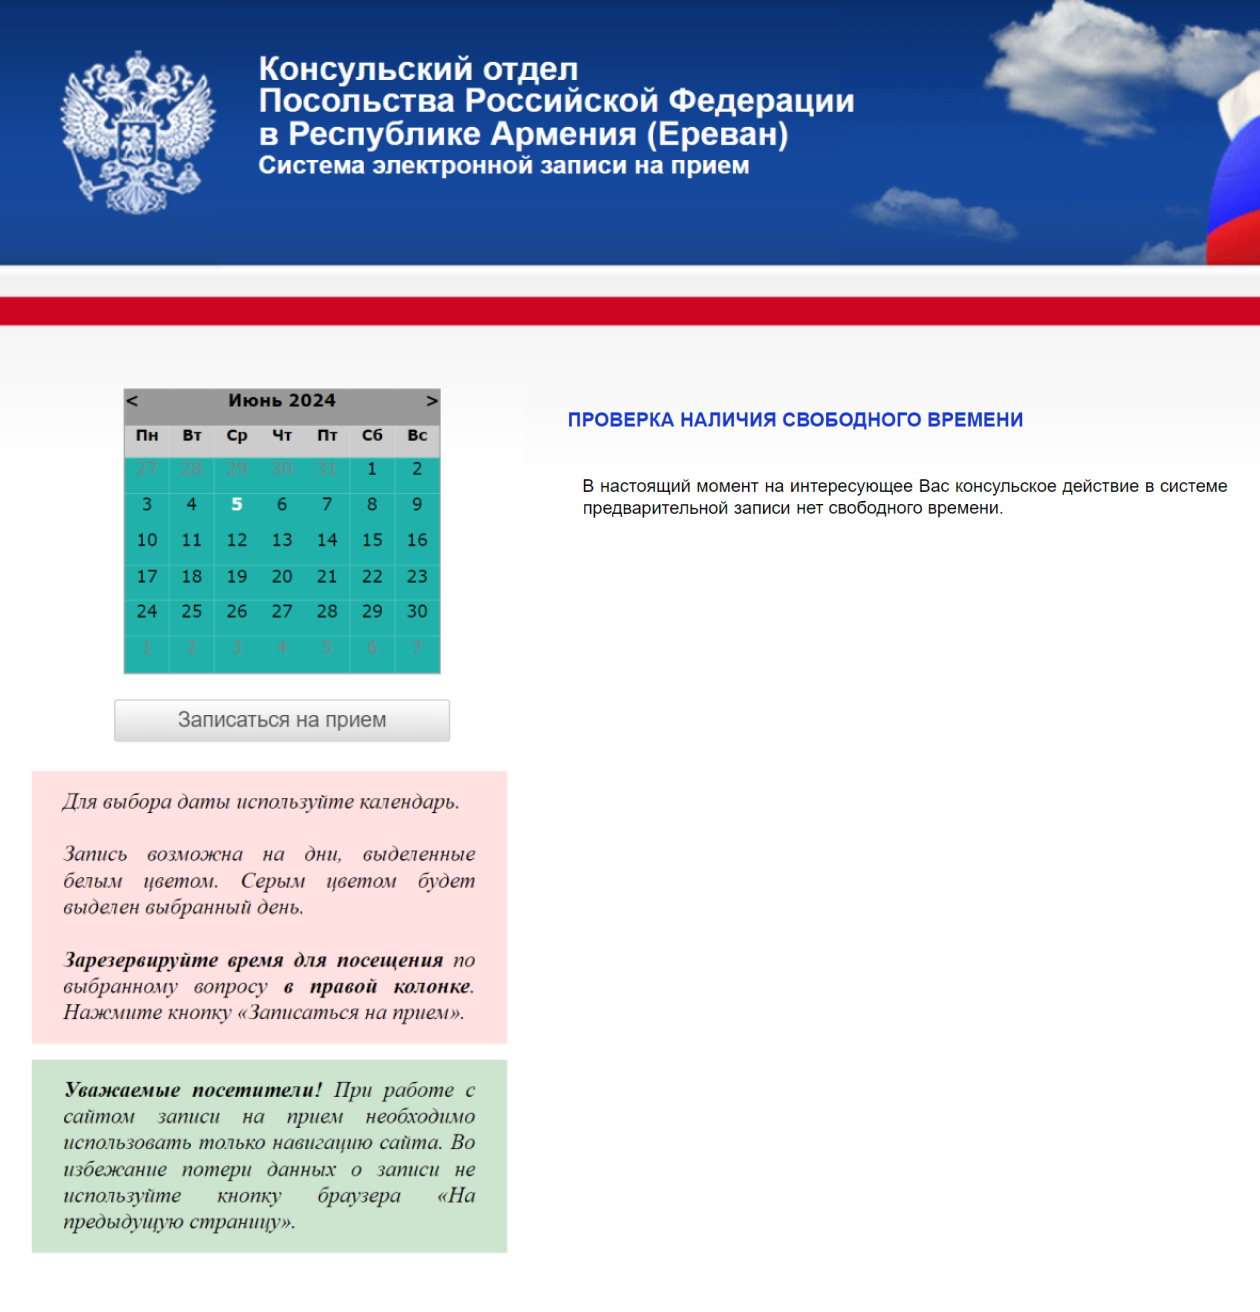 На сайте консульского отдела посольства России в Ереване ситуация аналогичная